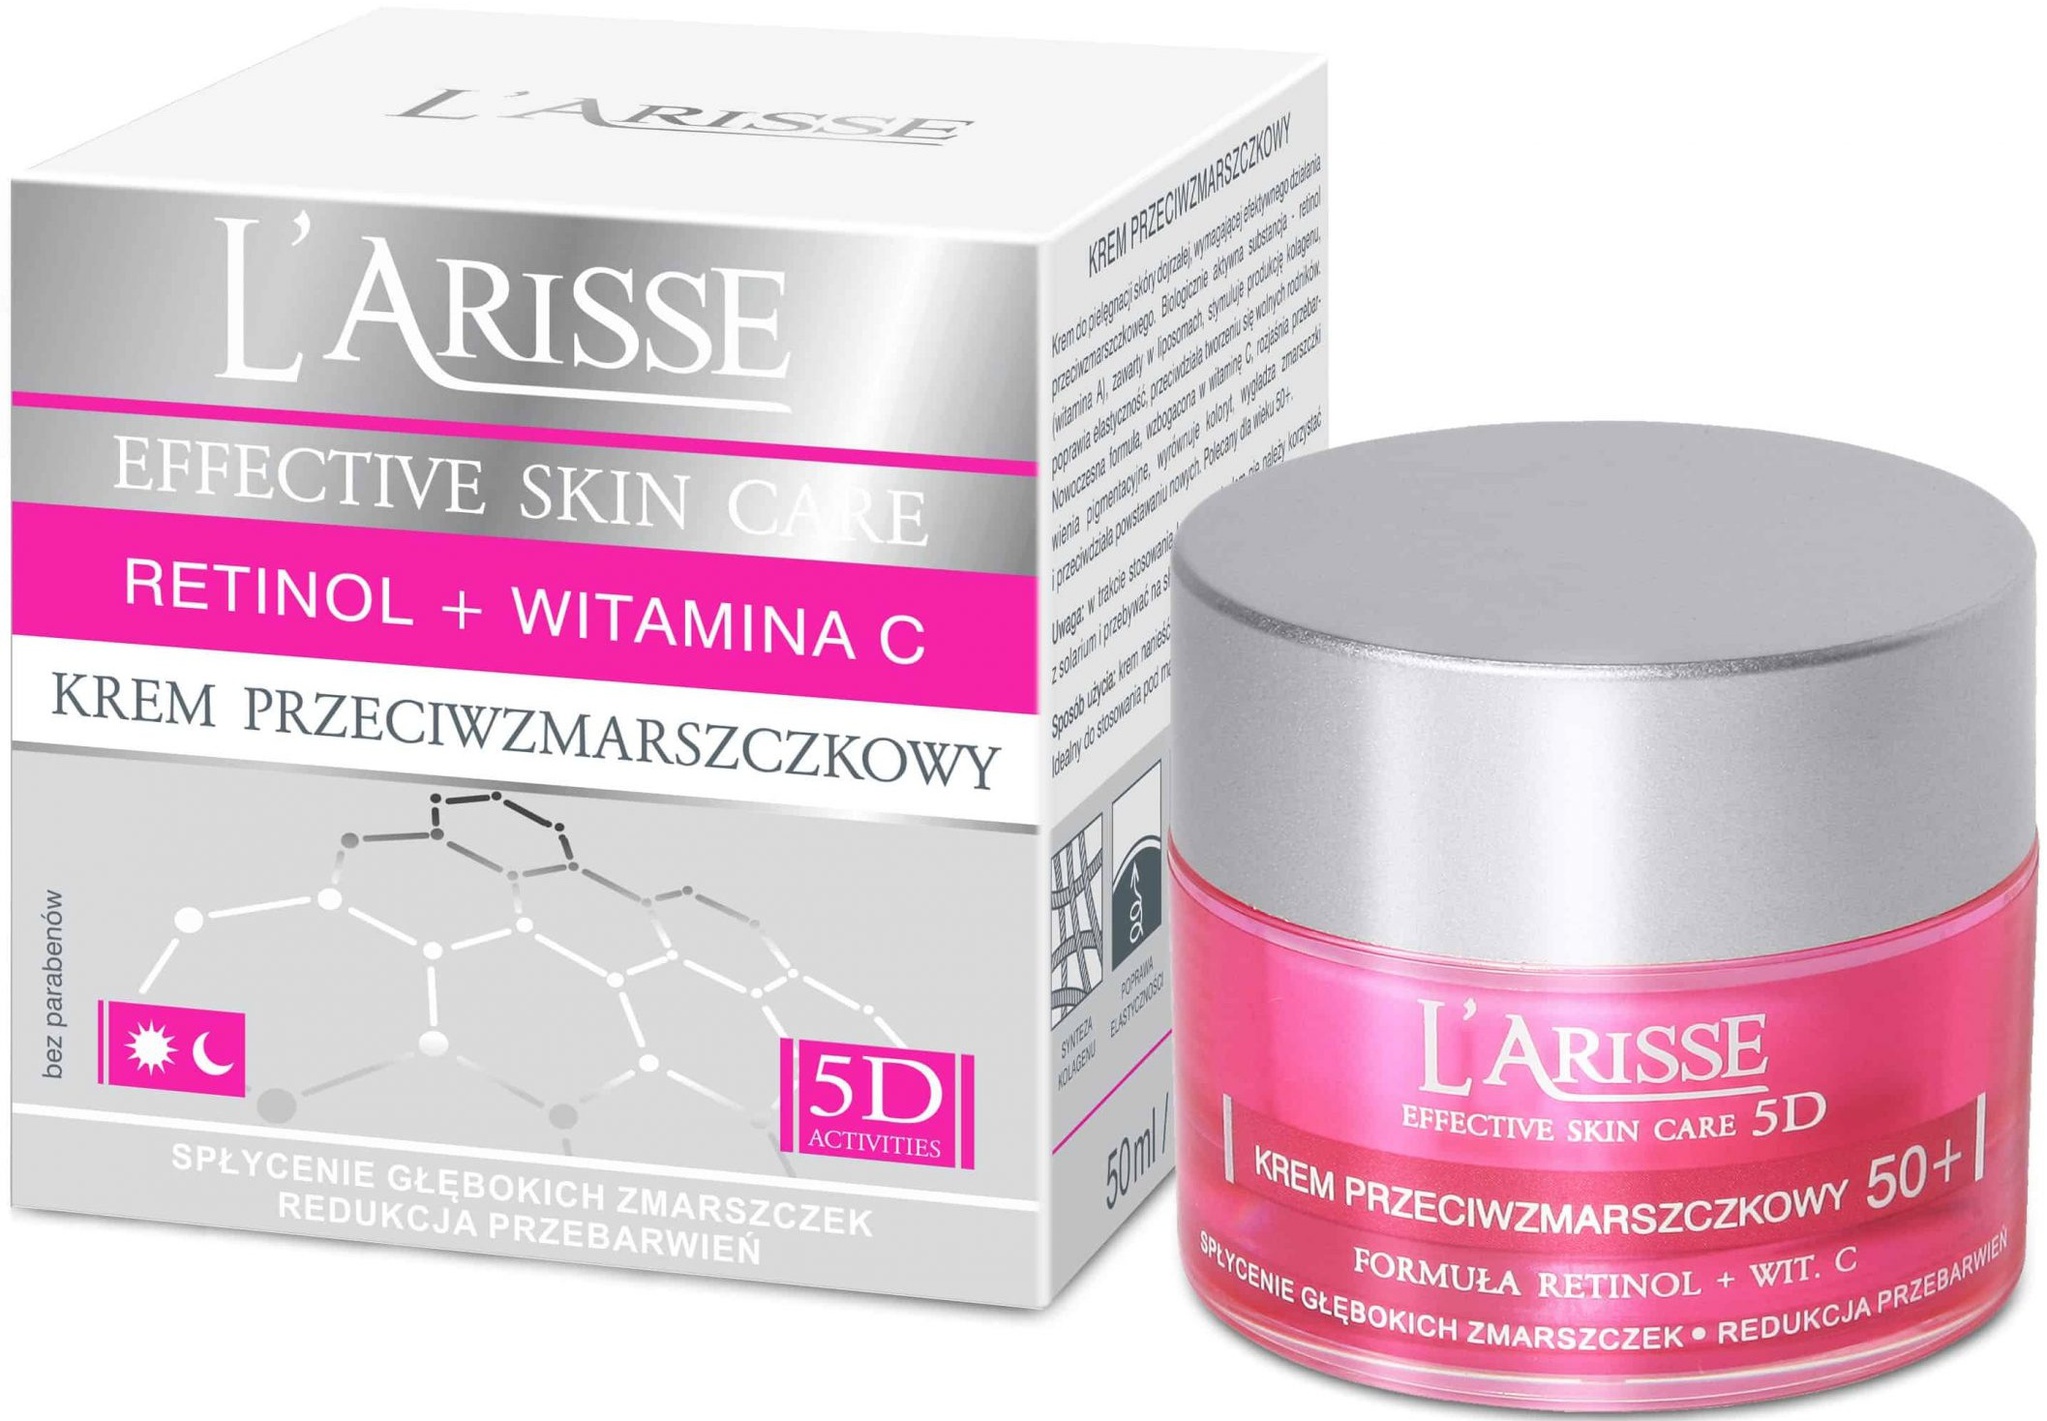 Ava Laboratorium L’Arisse Effective Skin Care 5D Active Formula With Retinol & Vitamin C Anti Aging Cream